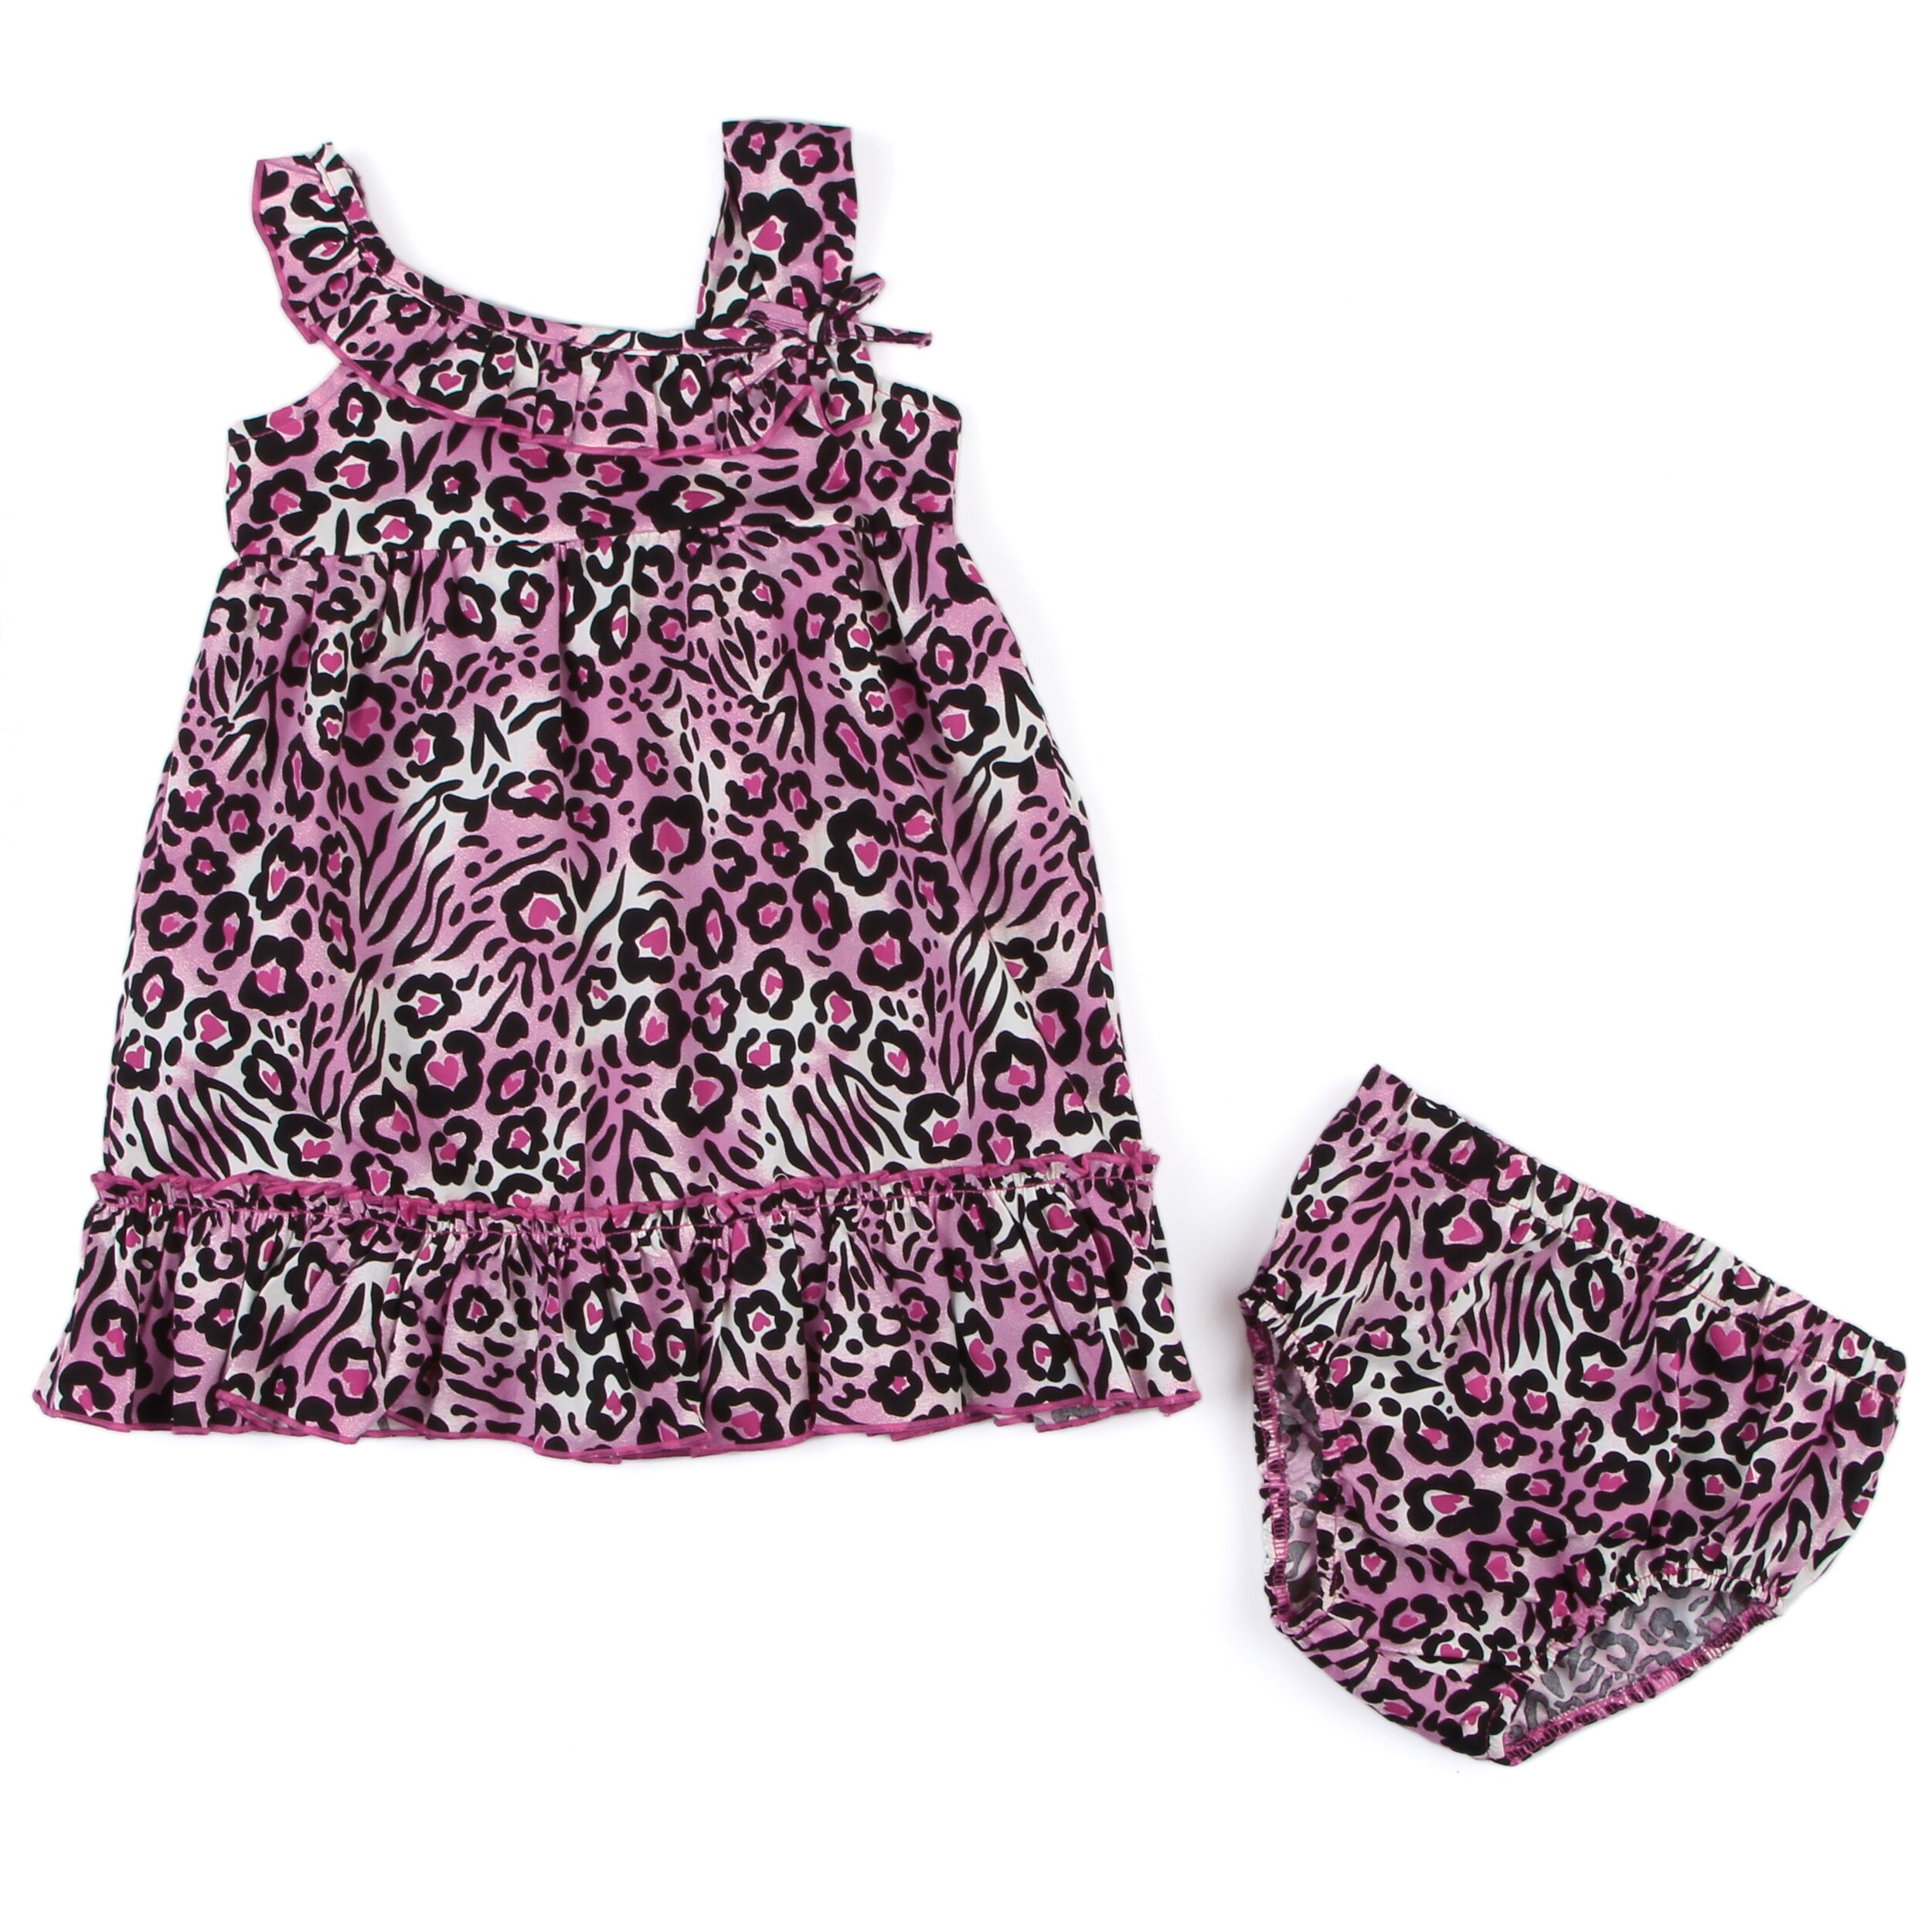 Lilybird Infant Girls Pink Cheetah Dress And Bloomer Set